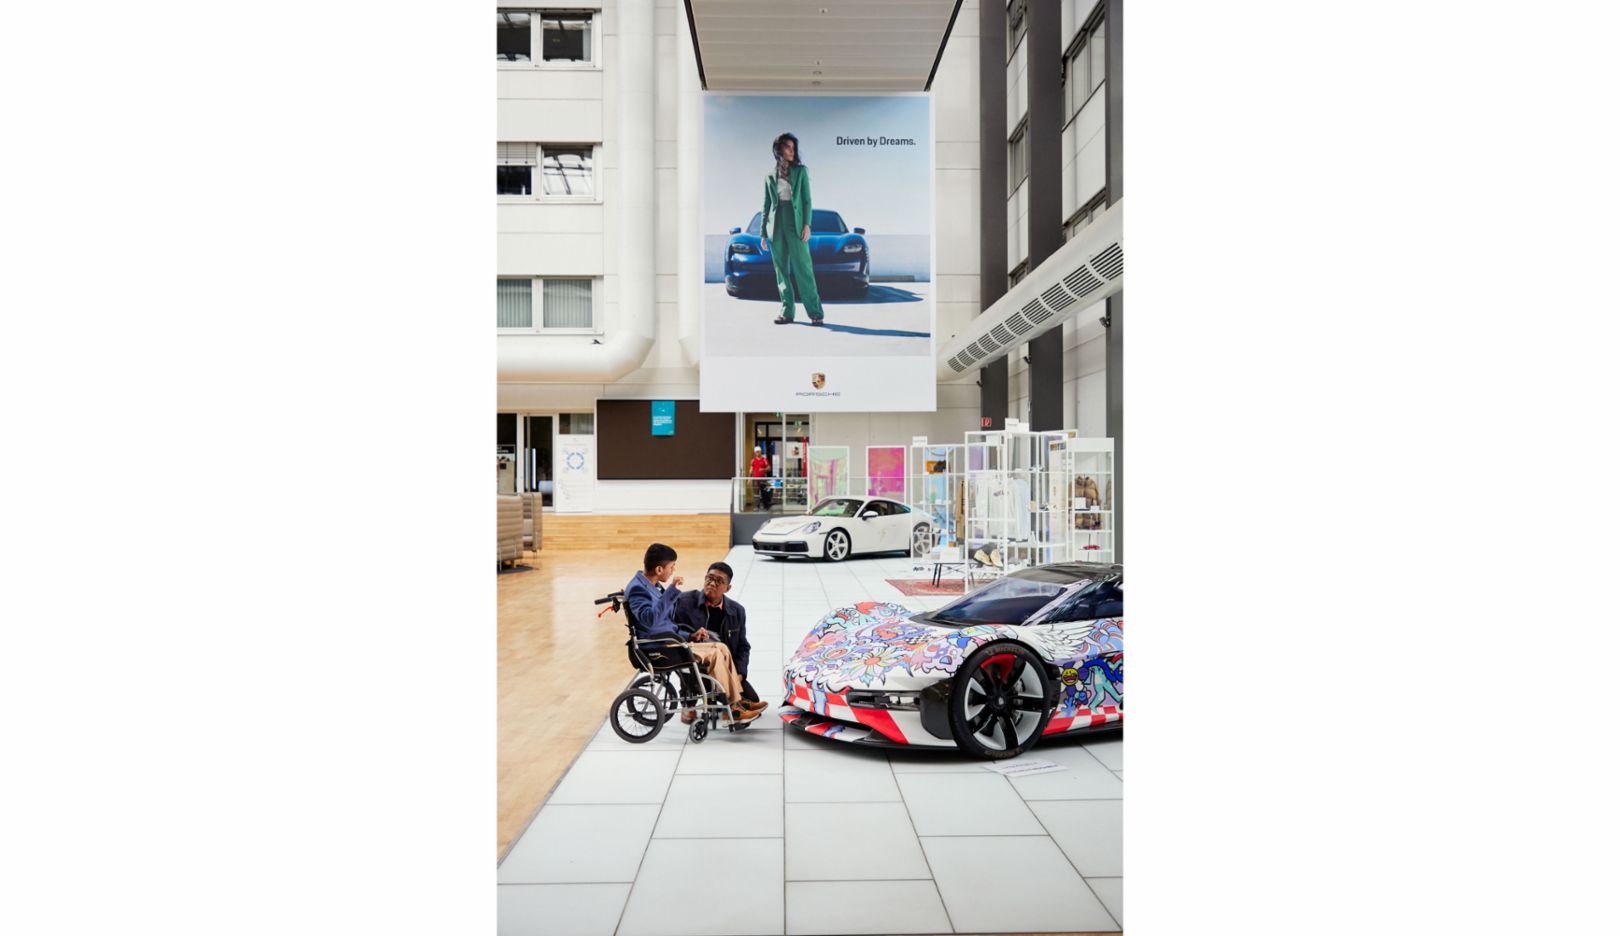 Driven by Dreams: Unter dem Porsche-Slogan geht ein Traum in Erfüllung. 